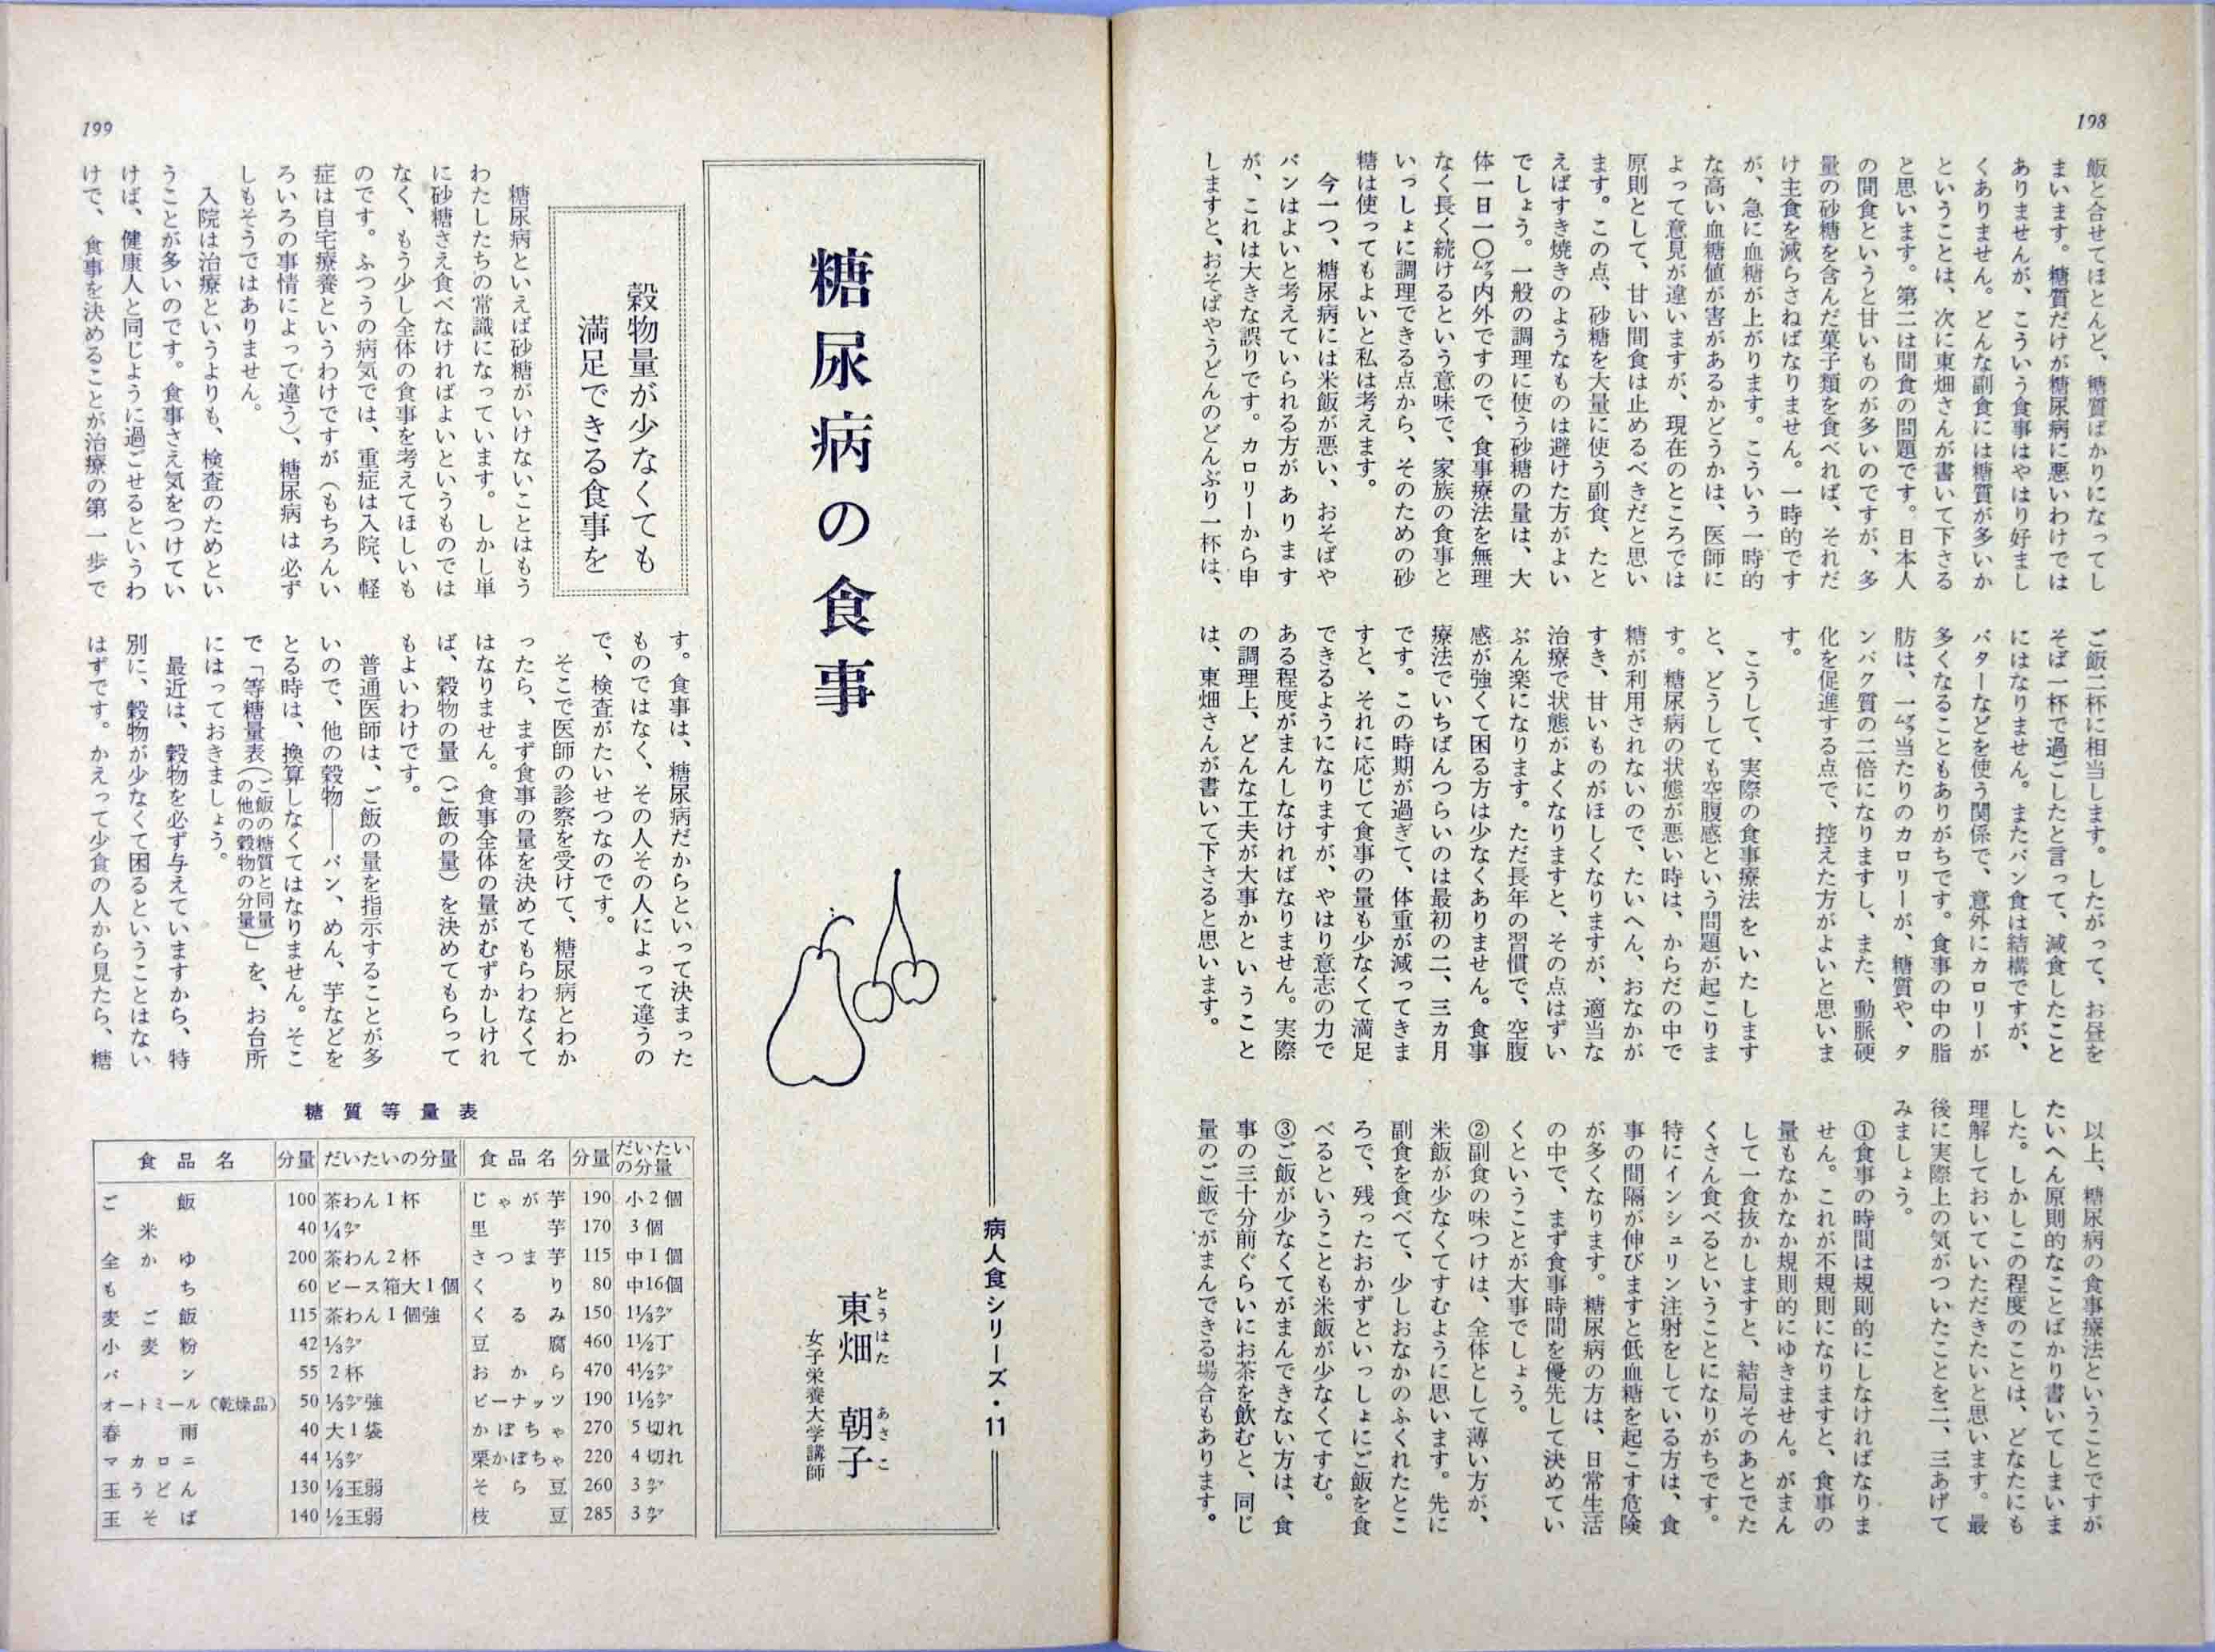 栄養と料理デジタルアーカイブス 昭和39年 1964年 11月第30巻第11号